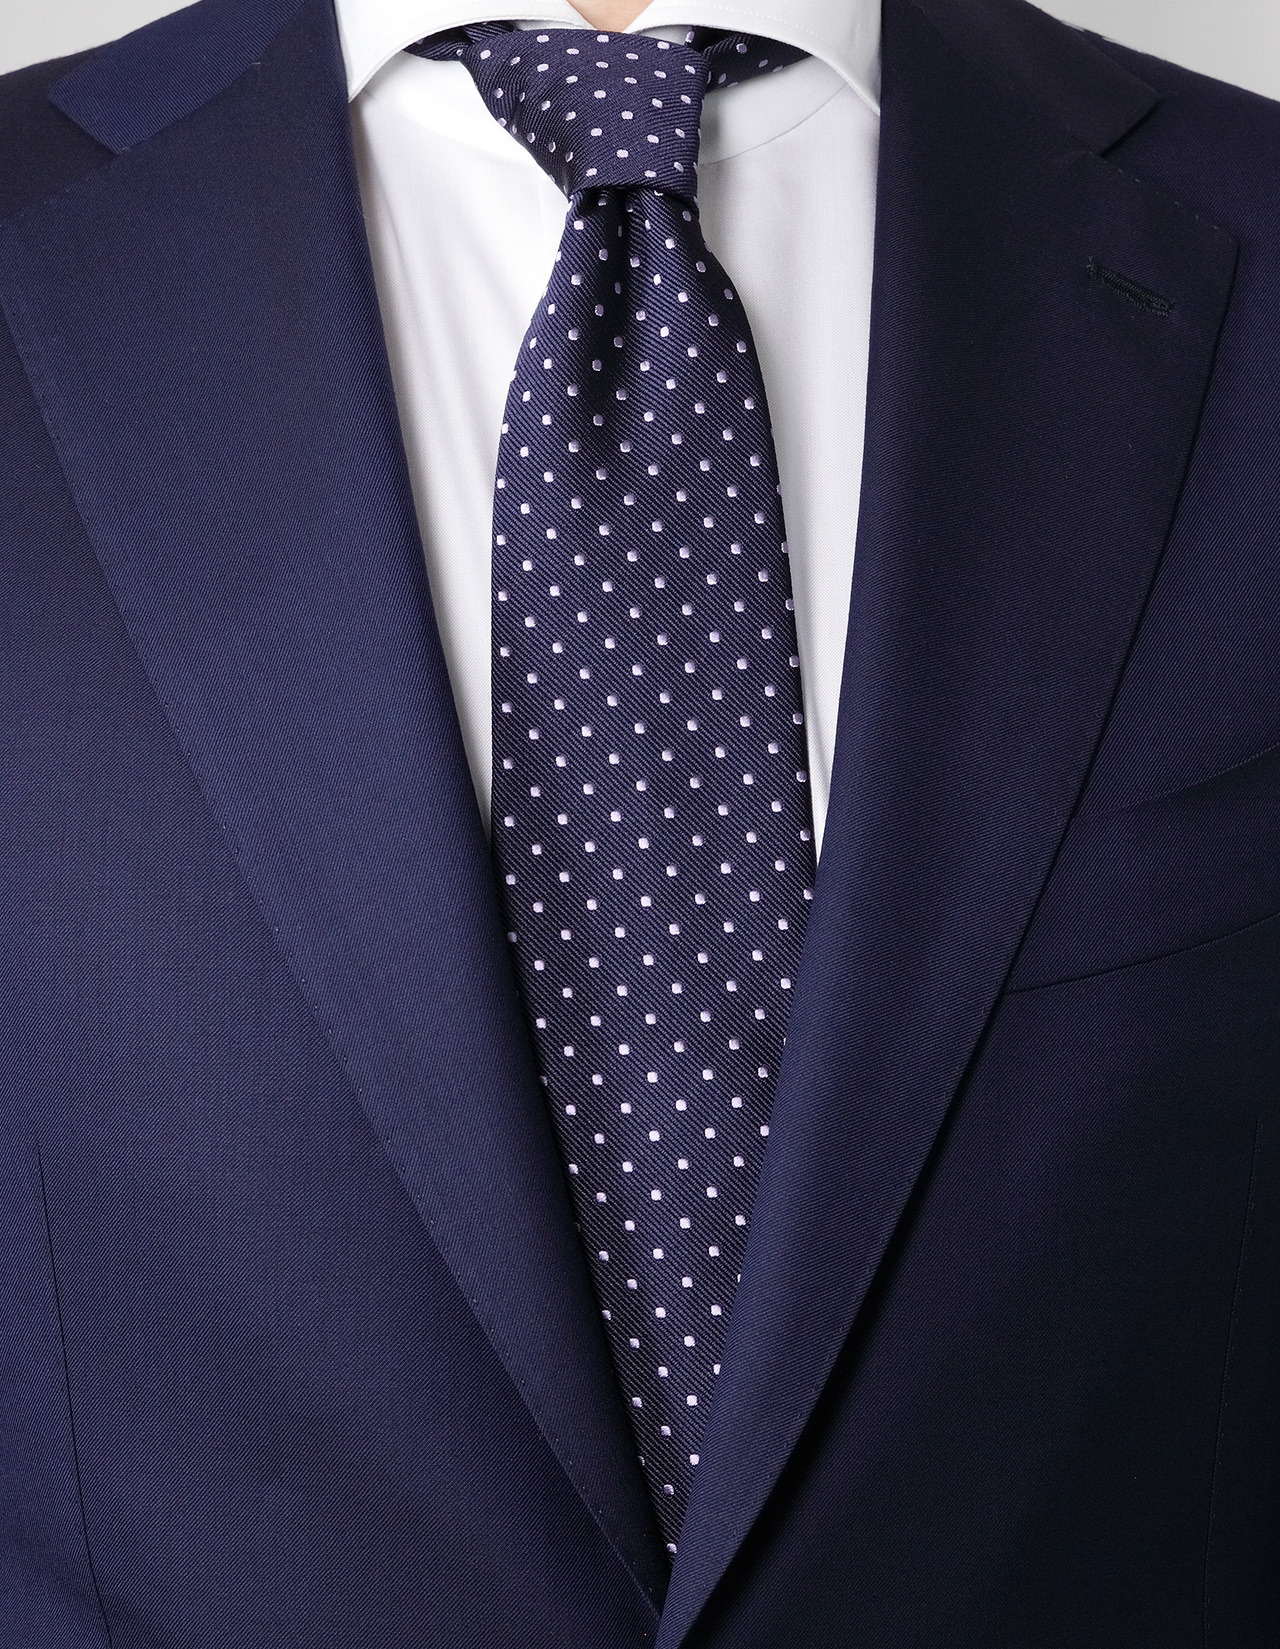 Cesare Attolini Krawatte in blau mit flieder Punkten